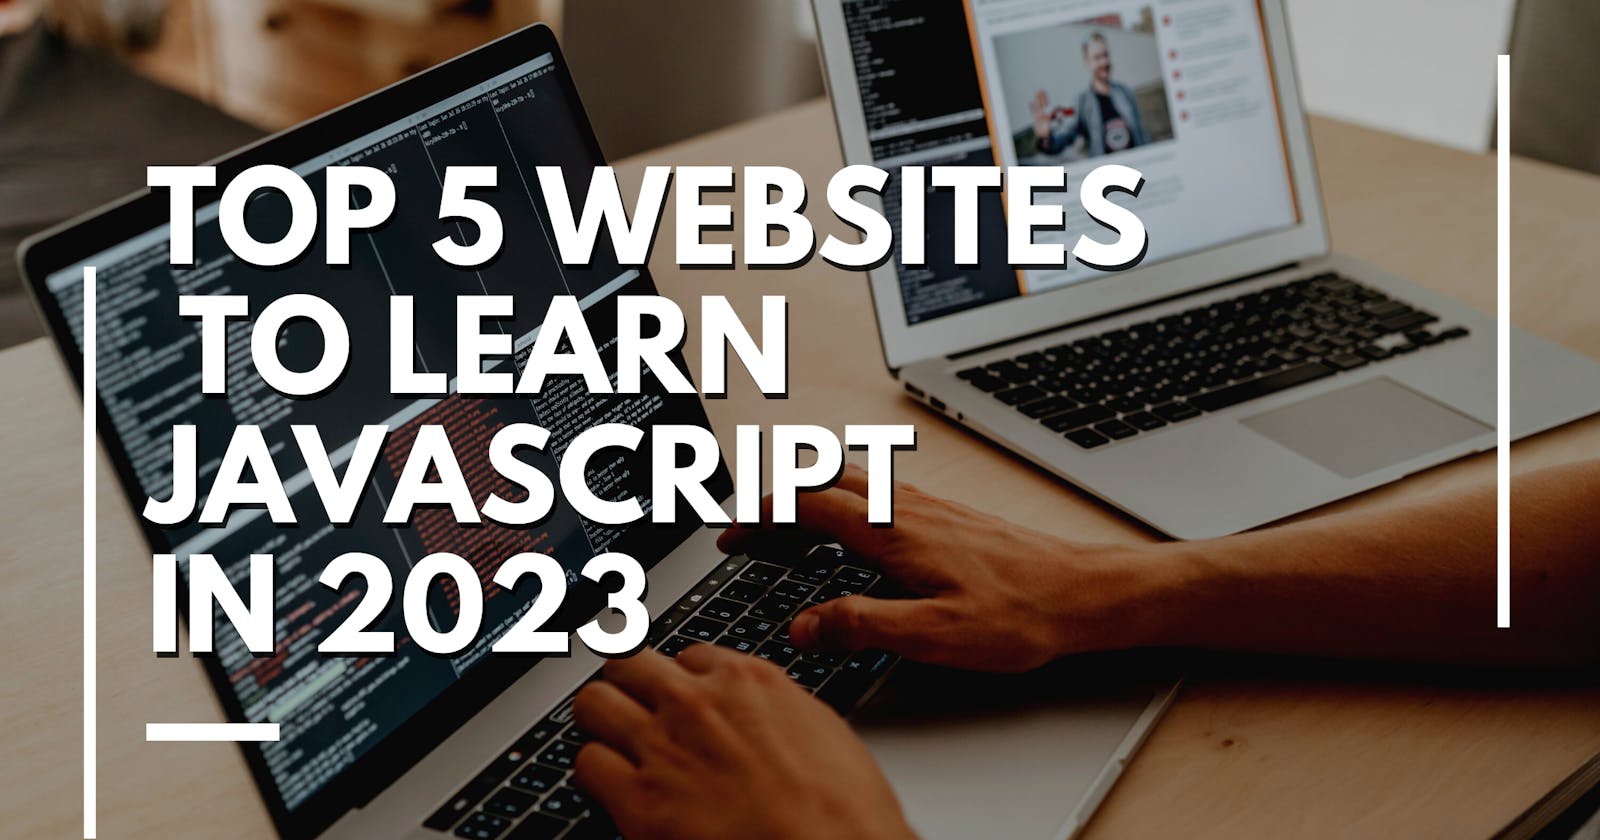 Best 5 websites for Learning JavaScript